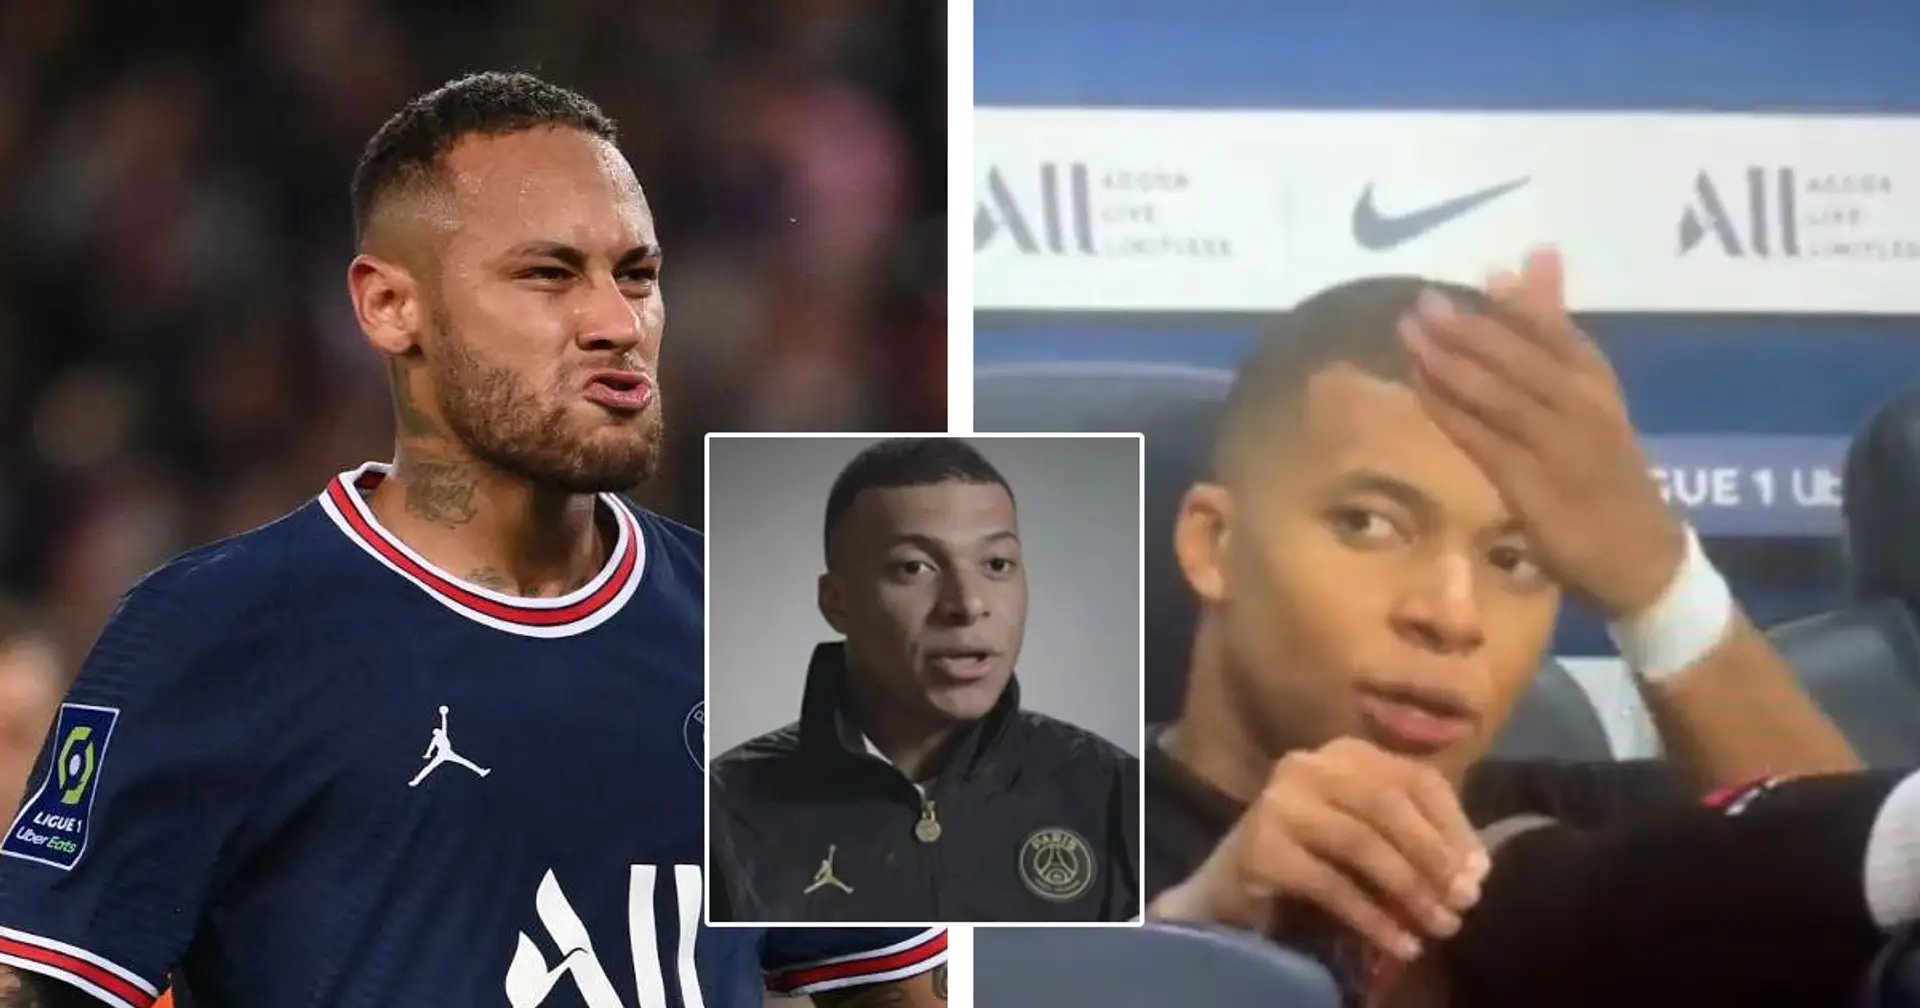 Kylian Mbappe enthüllt endlich, warum er Neymar in einem viralen Video als "Penner" bezeichnet hat